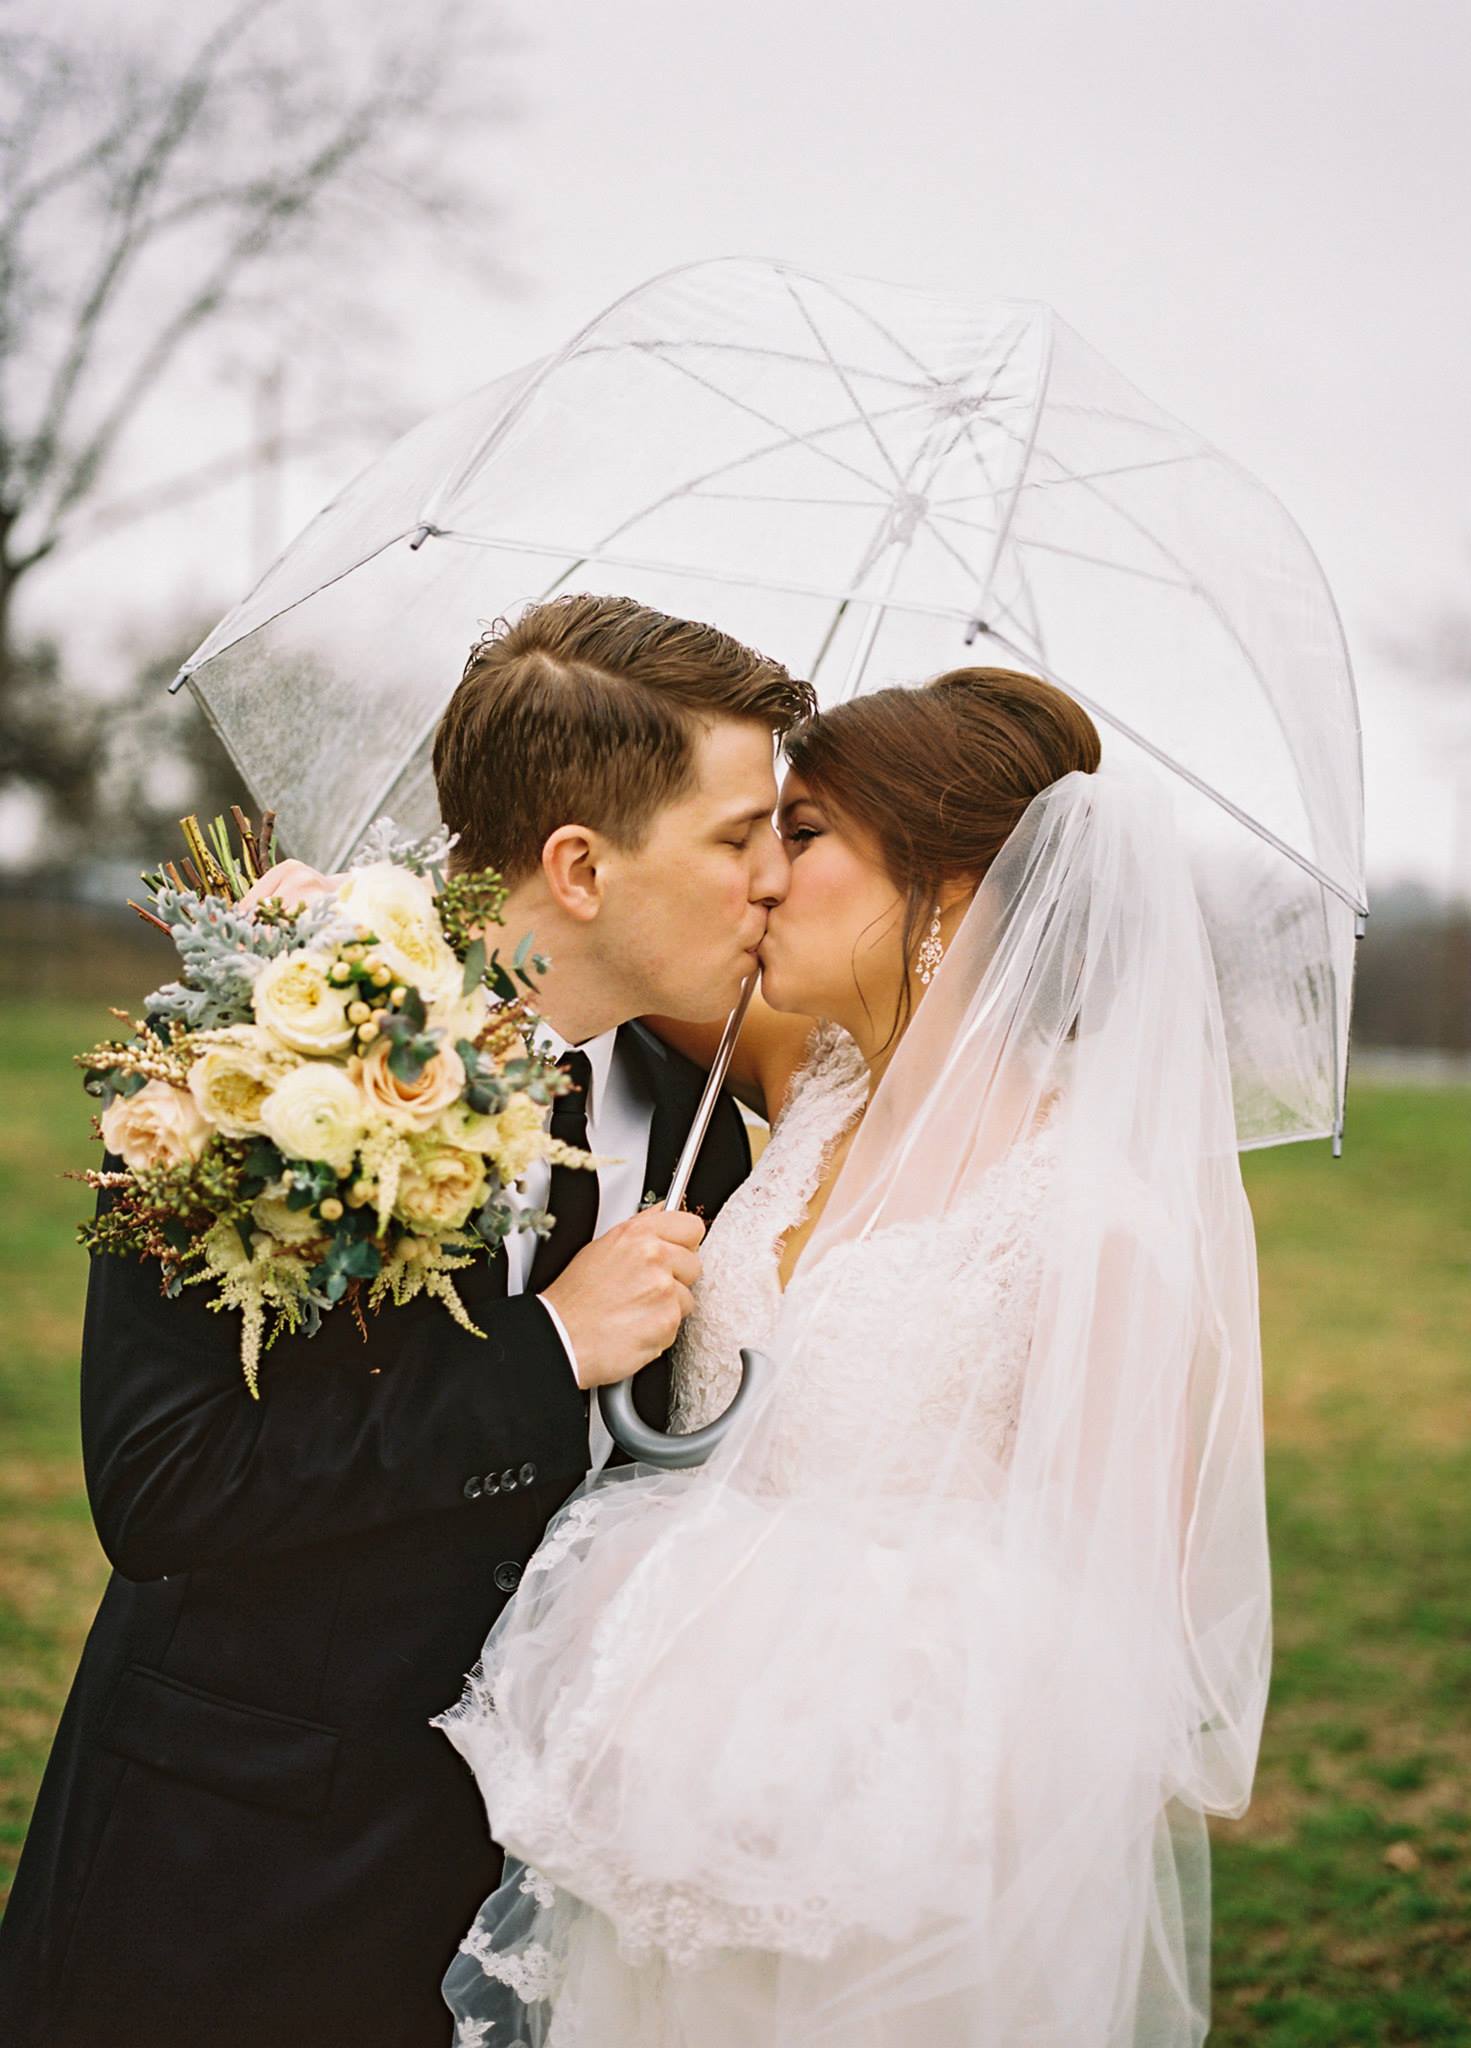 Rainy Day Romance // Nashville Wedding Flowers